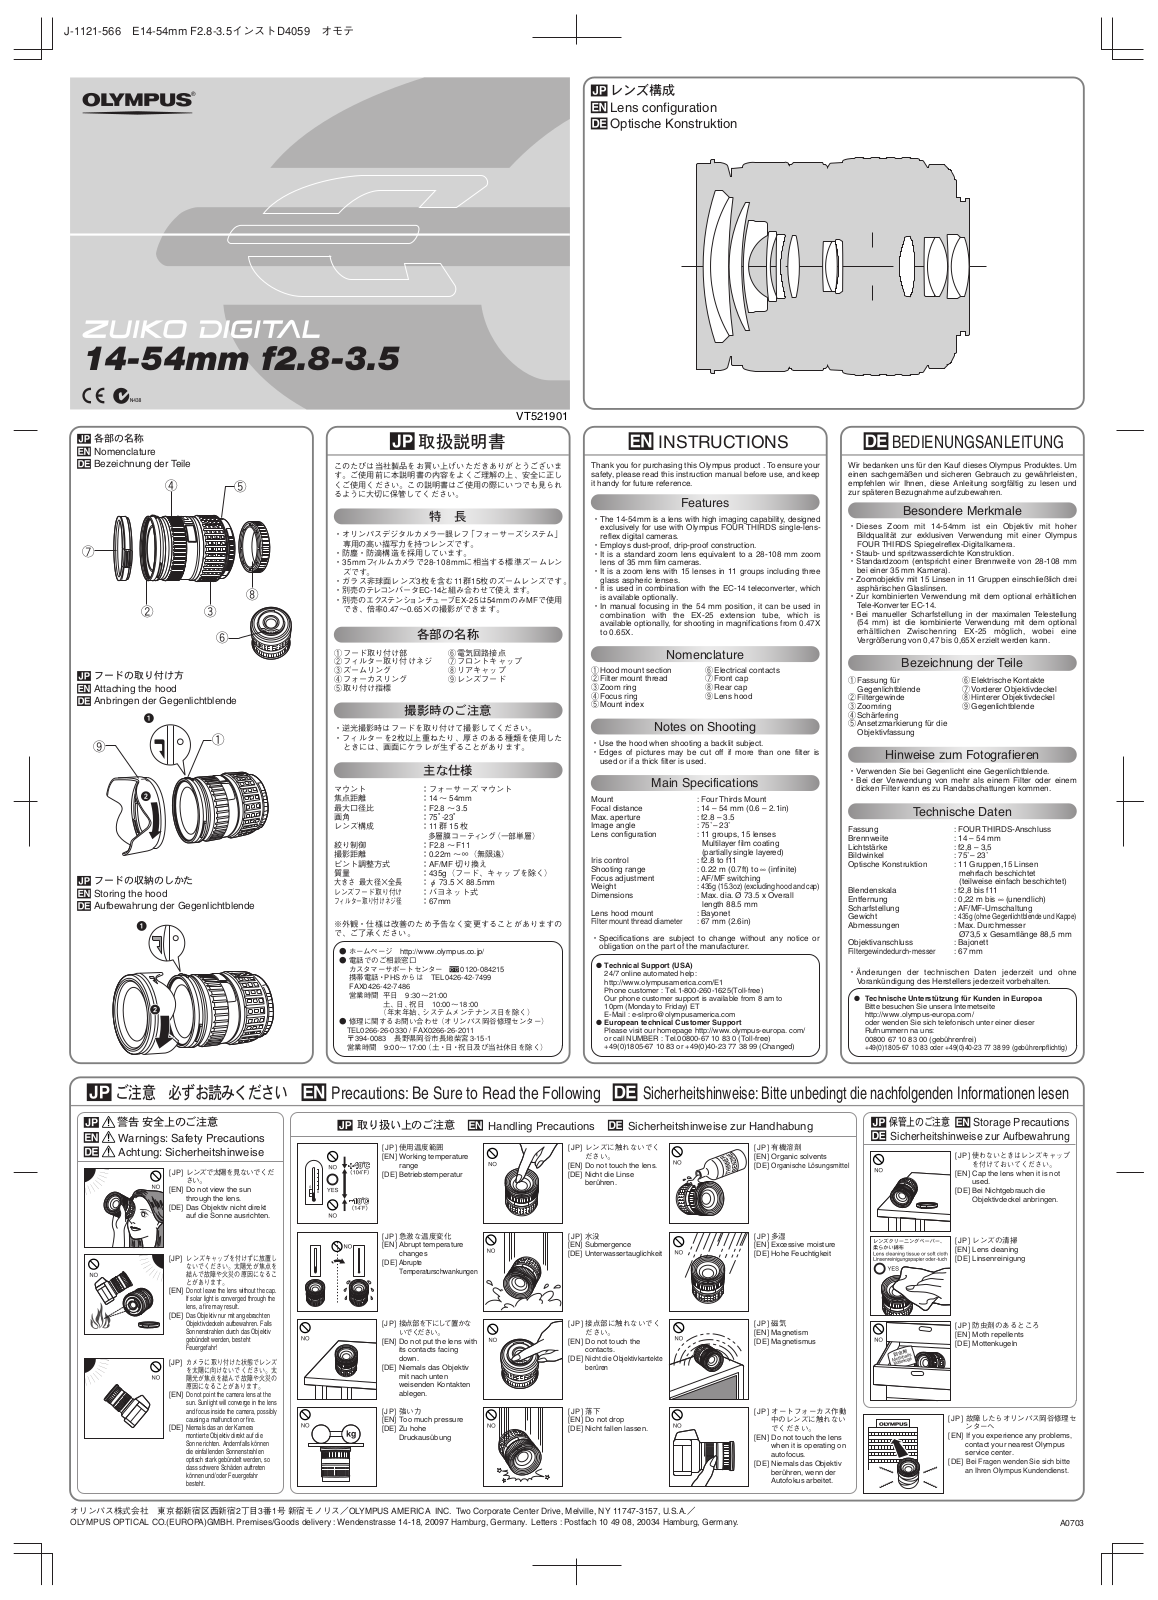 OLYMPUS ED 14-54 User Manual